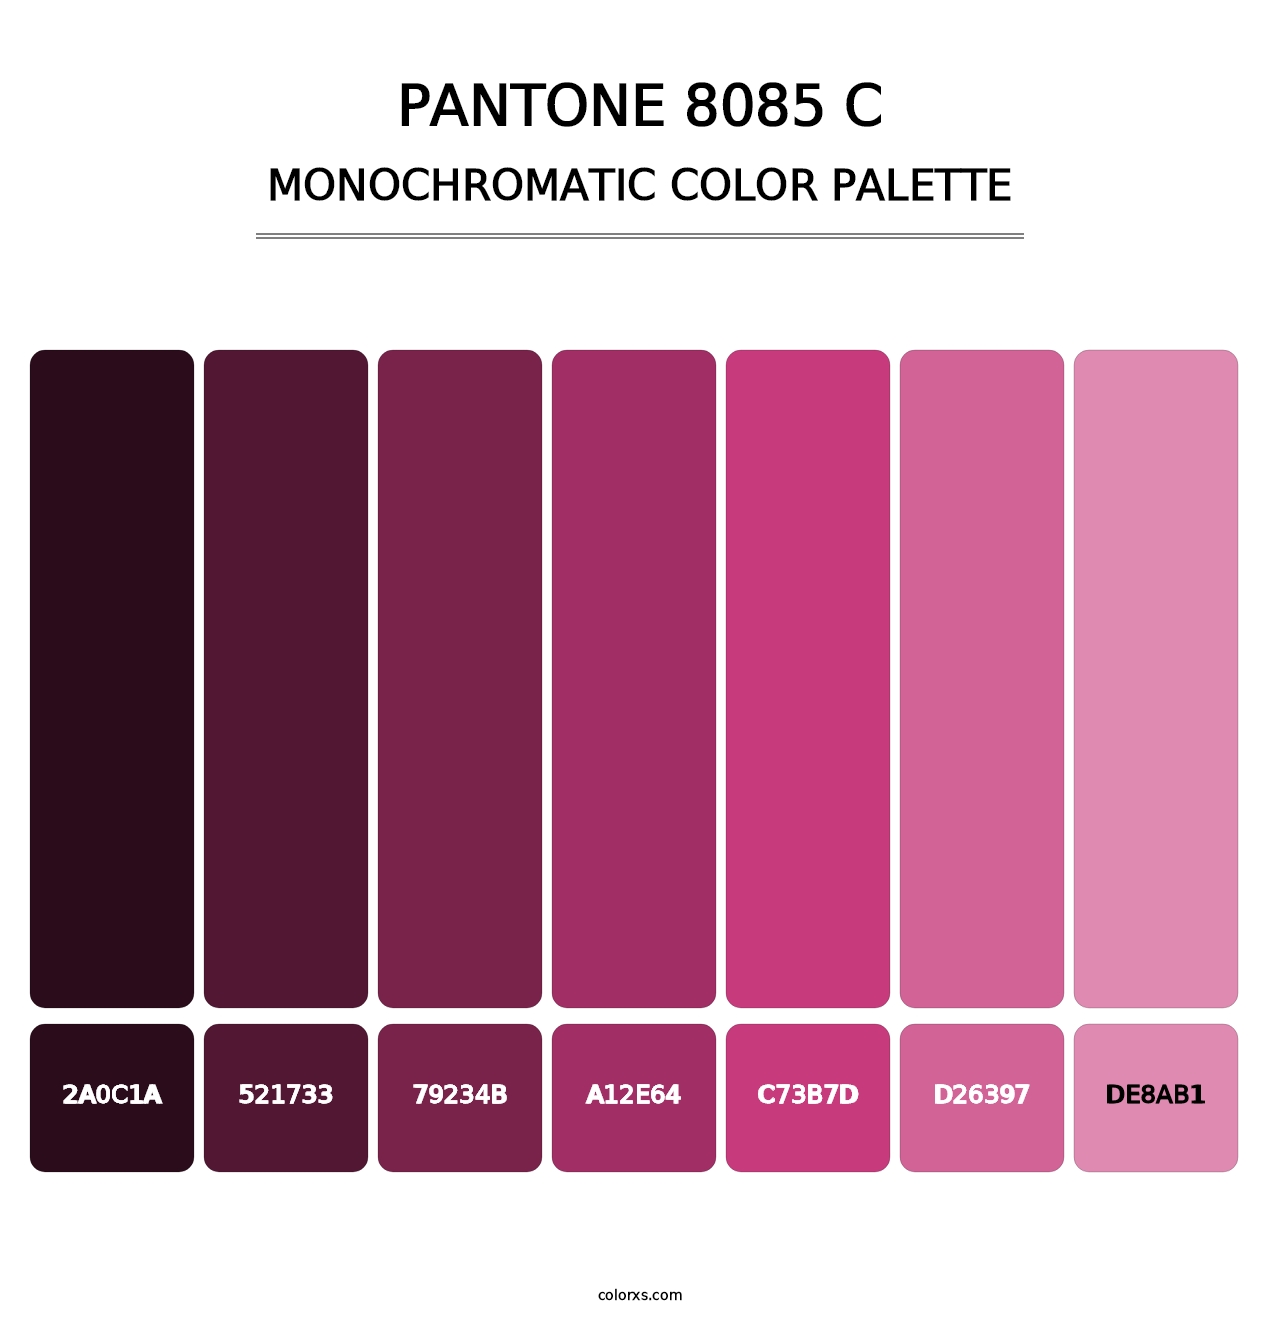 PANTONE 8085 C - Monochromatic Color Palette